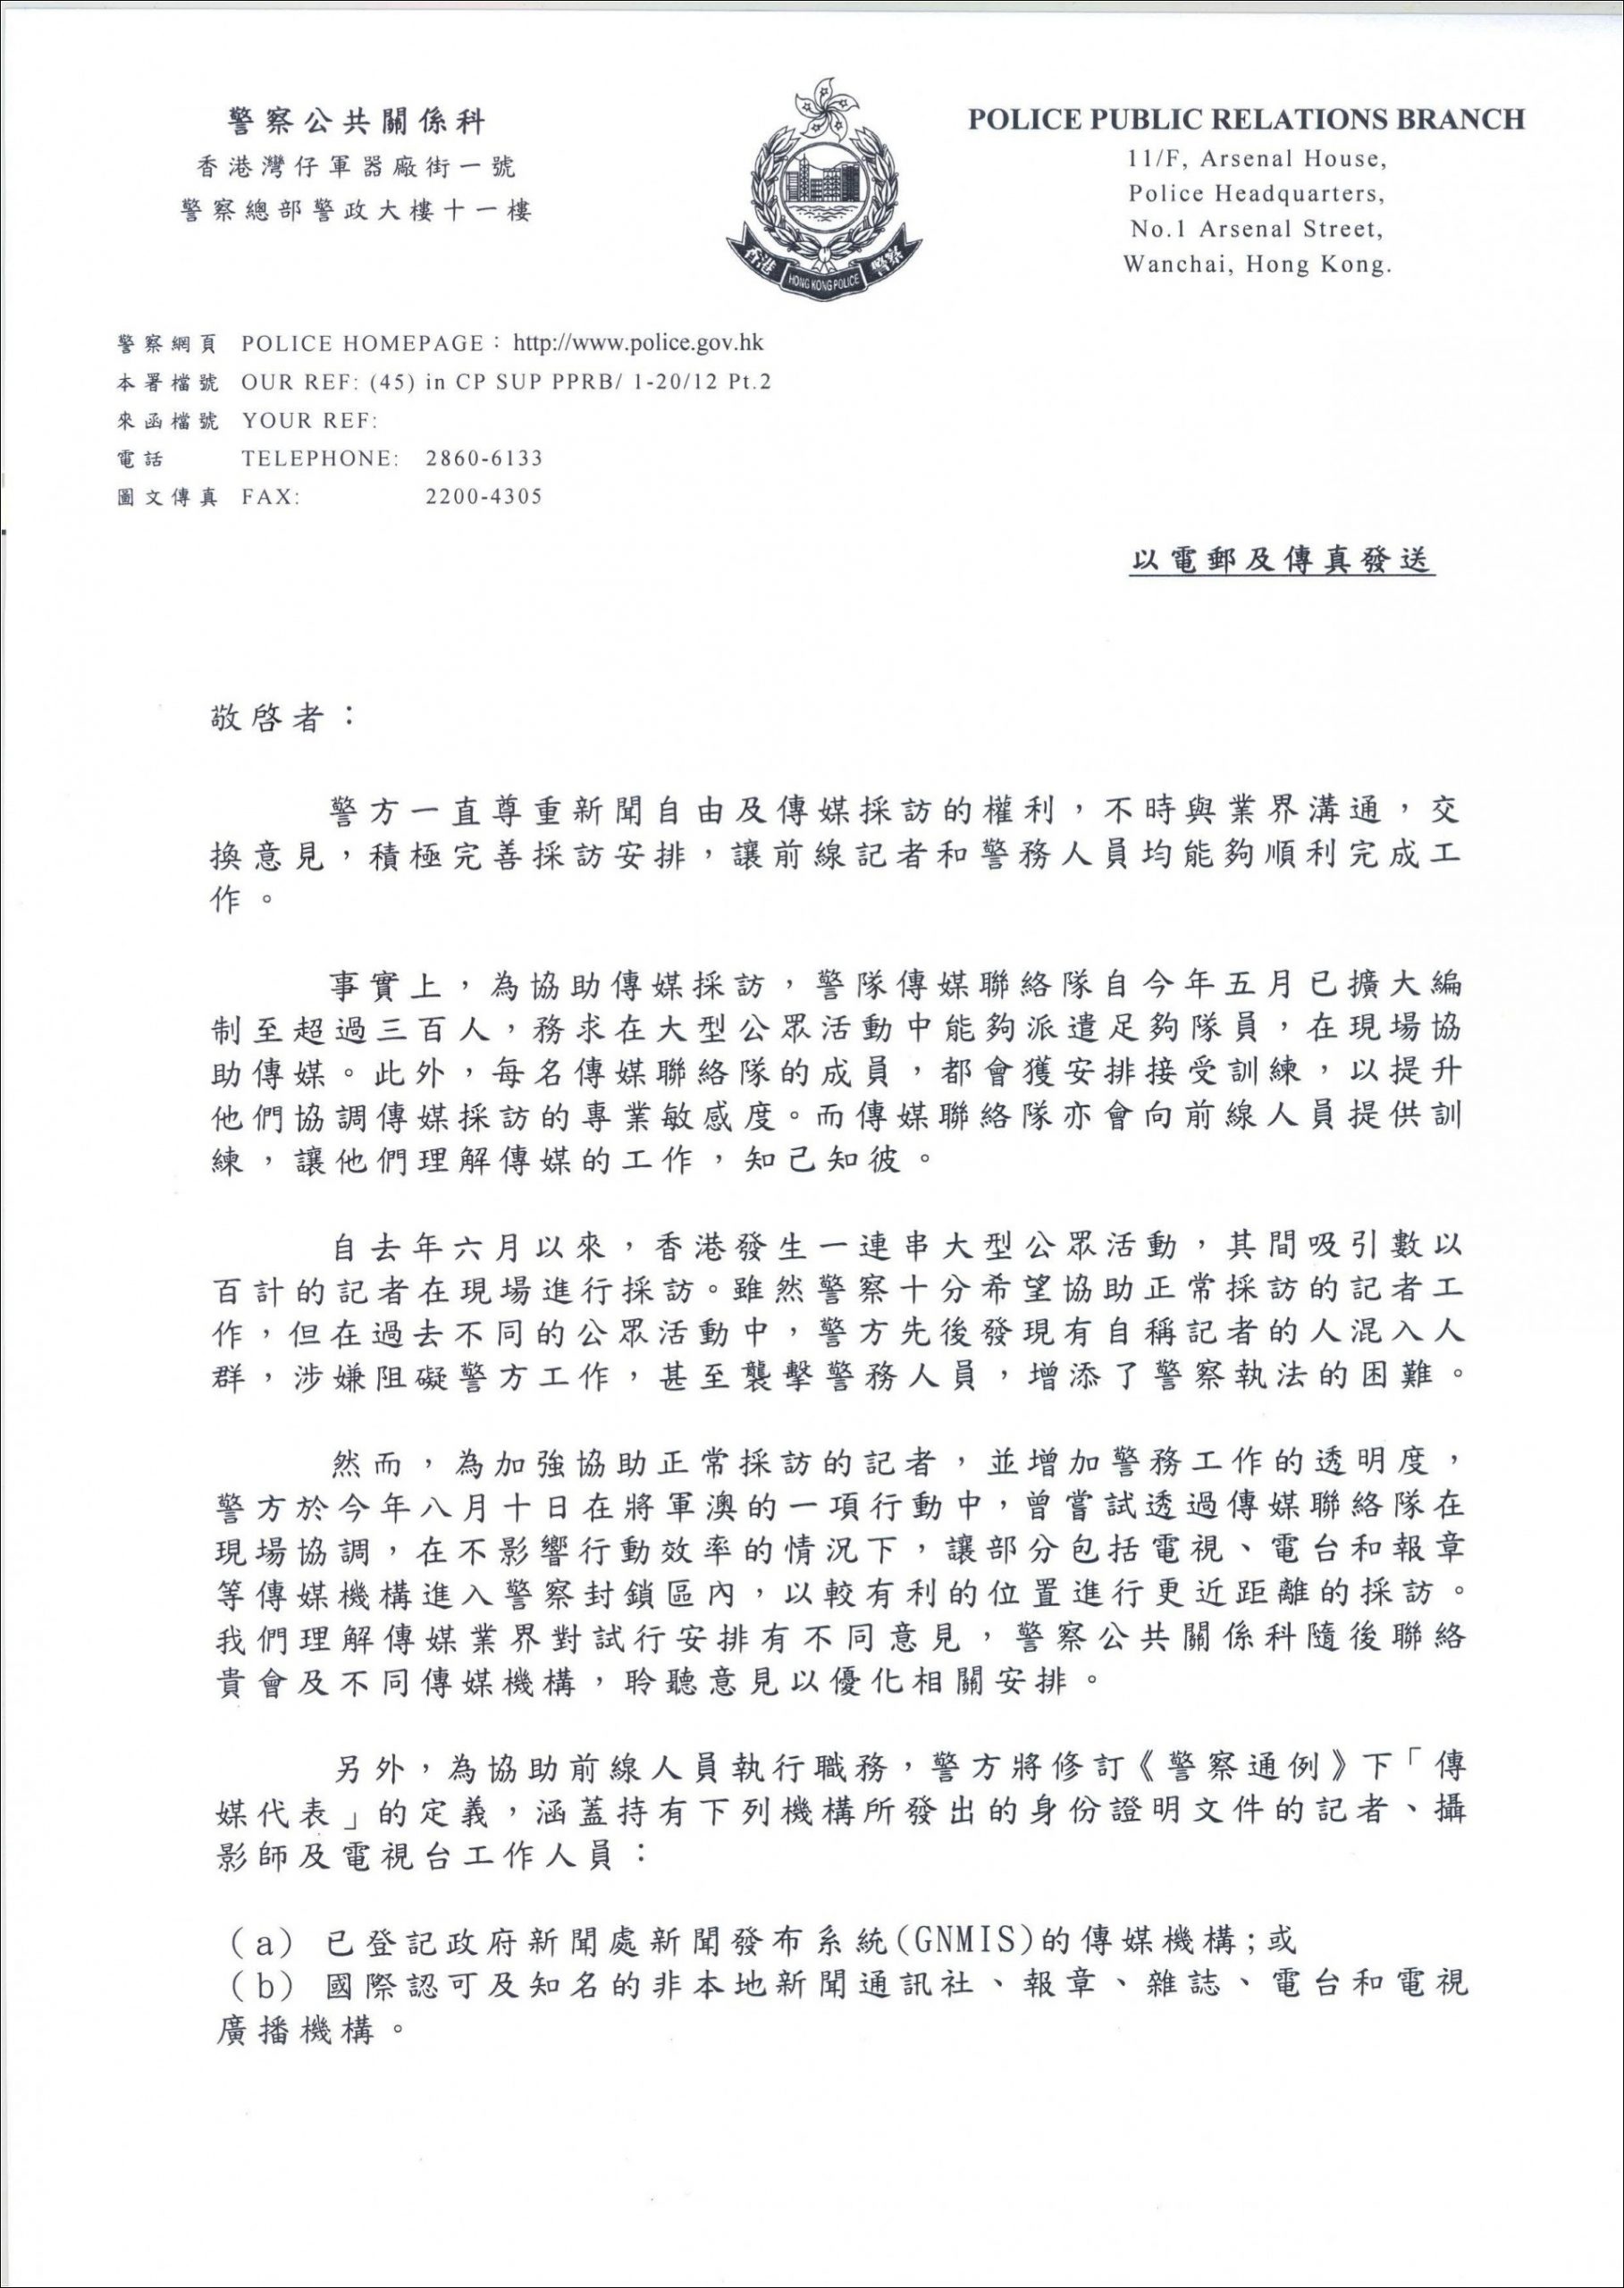 香港警方将修订“传媒代表”定义，香港记协记者证不管用了